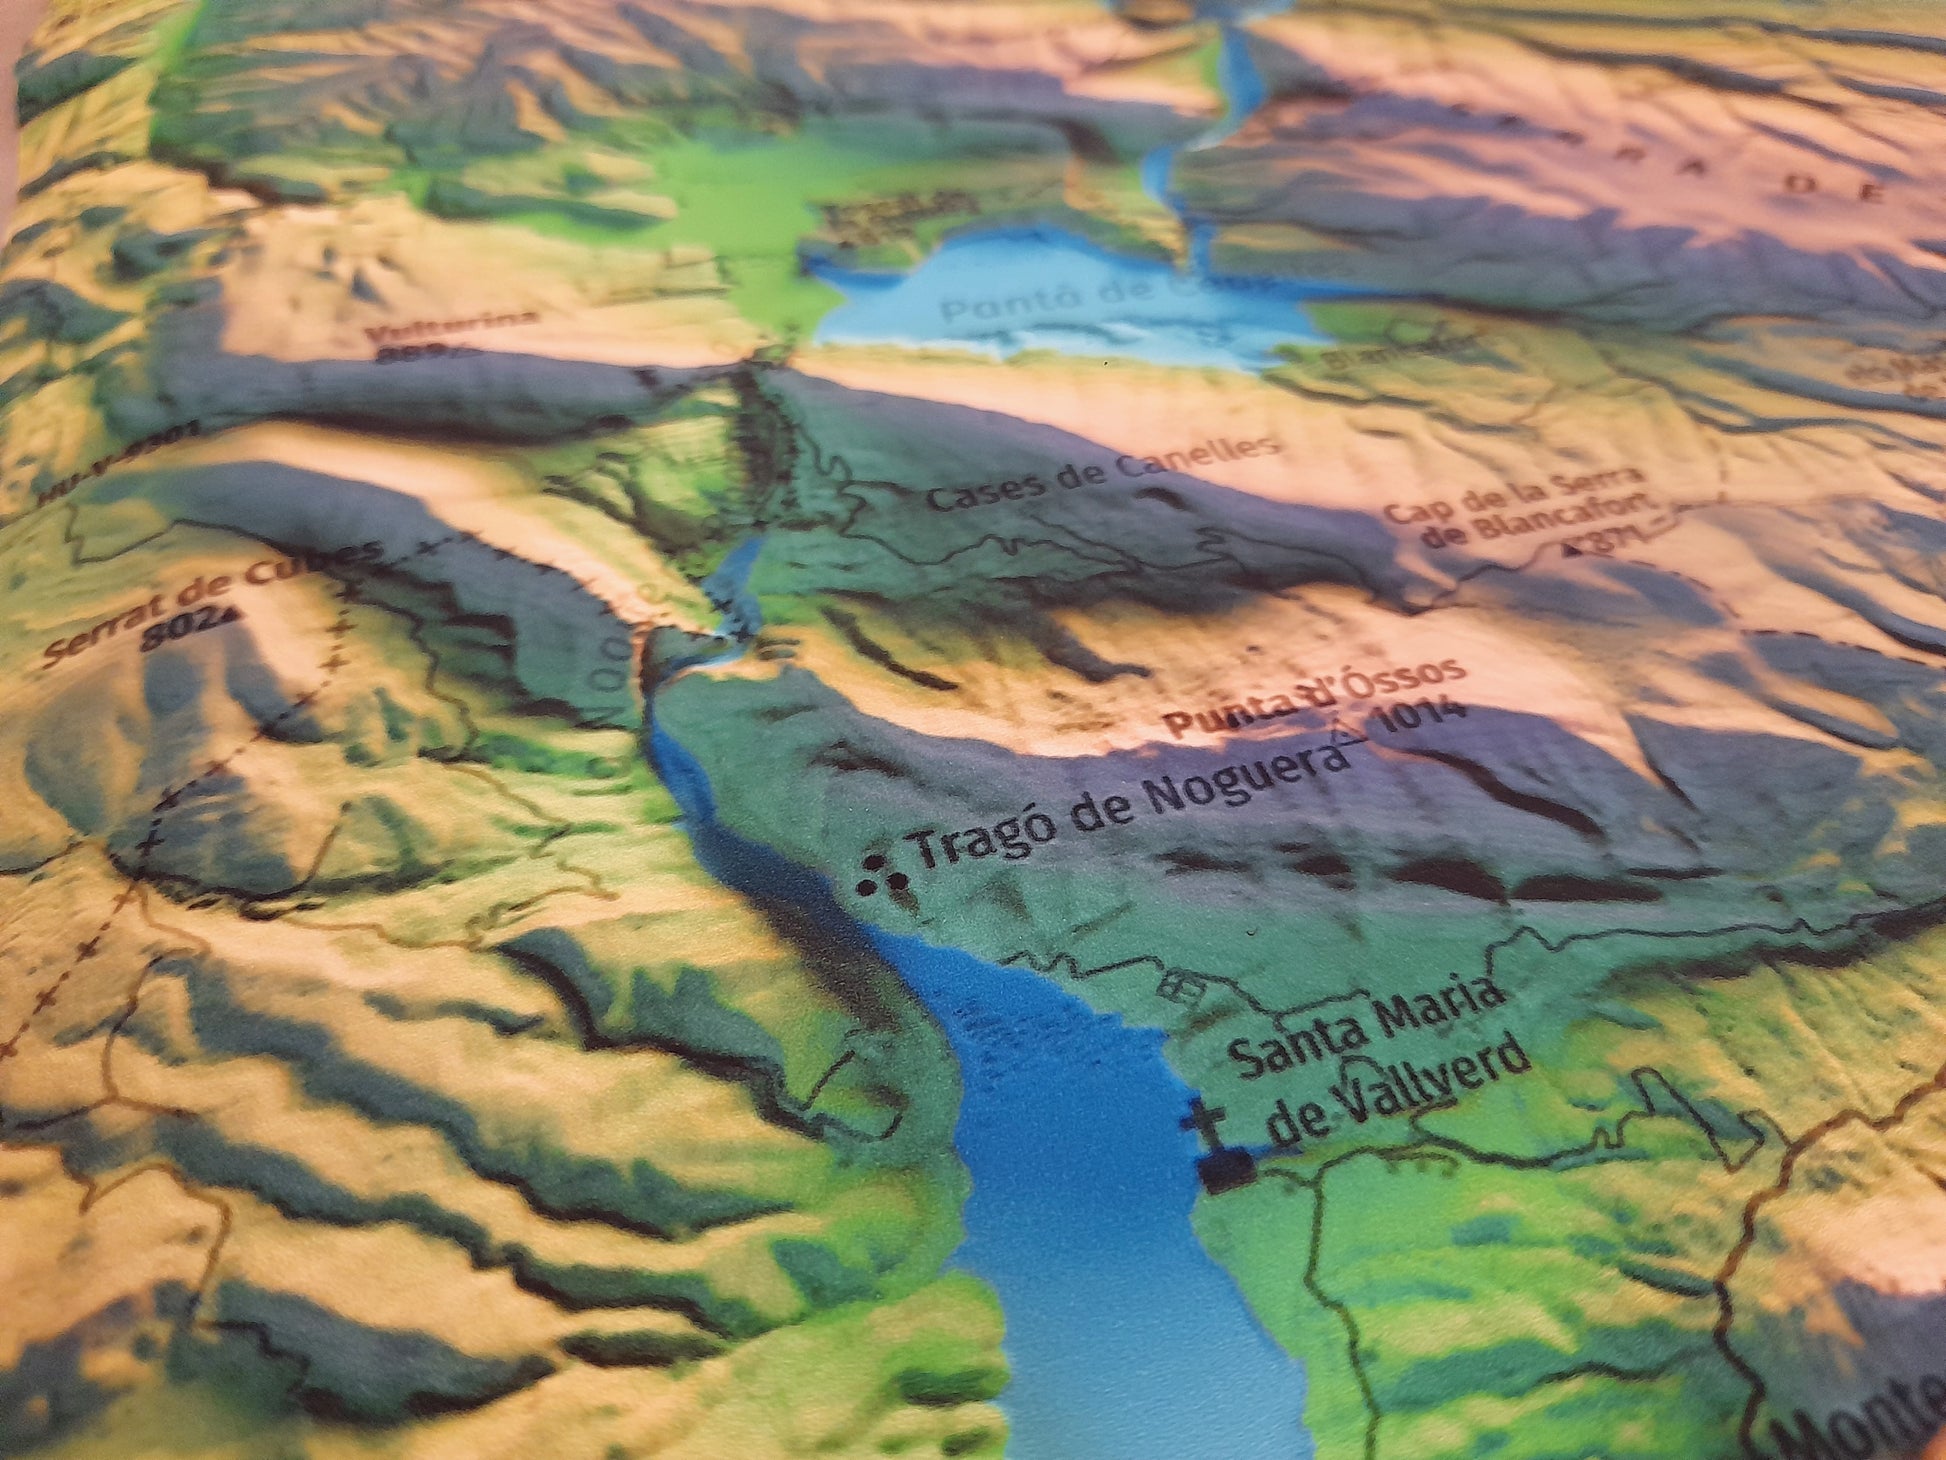 Detall de Tragó de Noguera. Mapa imprès que inclou tota la Serra del Montsec, que inclou Montsec de l'Estall, Montsec d'Ares i Montsec de Rúbies (o de Meià). El mapa es presenta en un estil minimalista i elegant, amb un detallat modelatge d'elevacions terrestres mapa imprès que abasta tota la Serra del Montsec, que inclou Montsec de l'Estall, Montsec d'Ares i Montsec de Rúbies (o de Meià). El mapa es presenta en un estil minimalista i elegant, amb un modelat detallat d'elevacions terrestres.